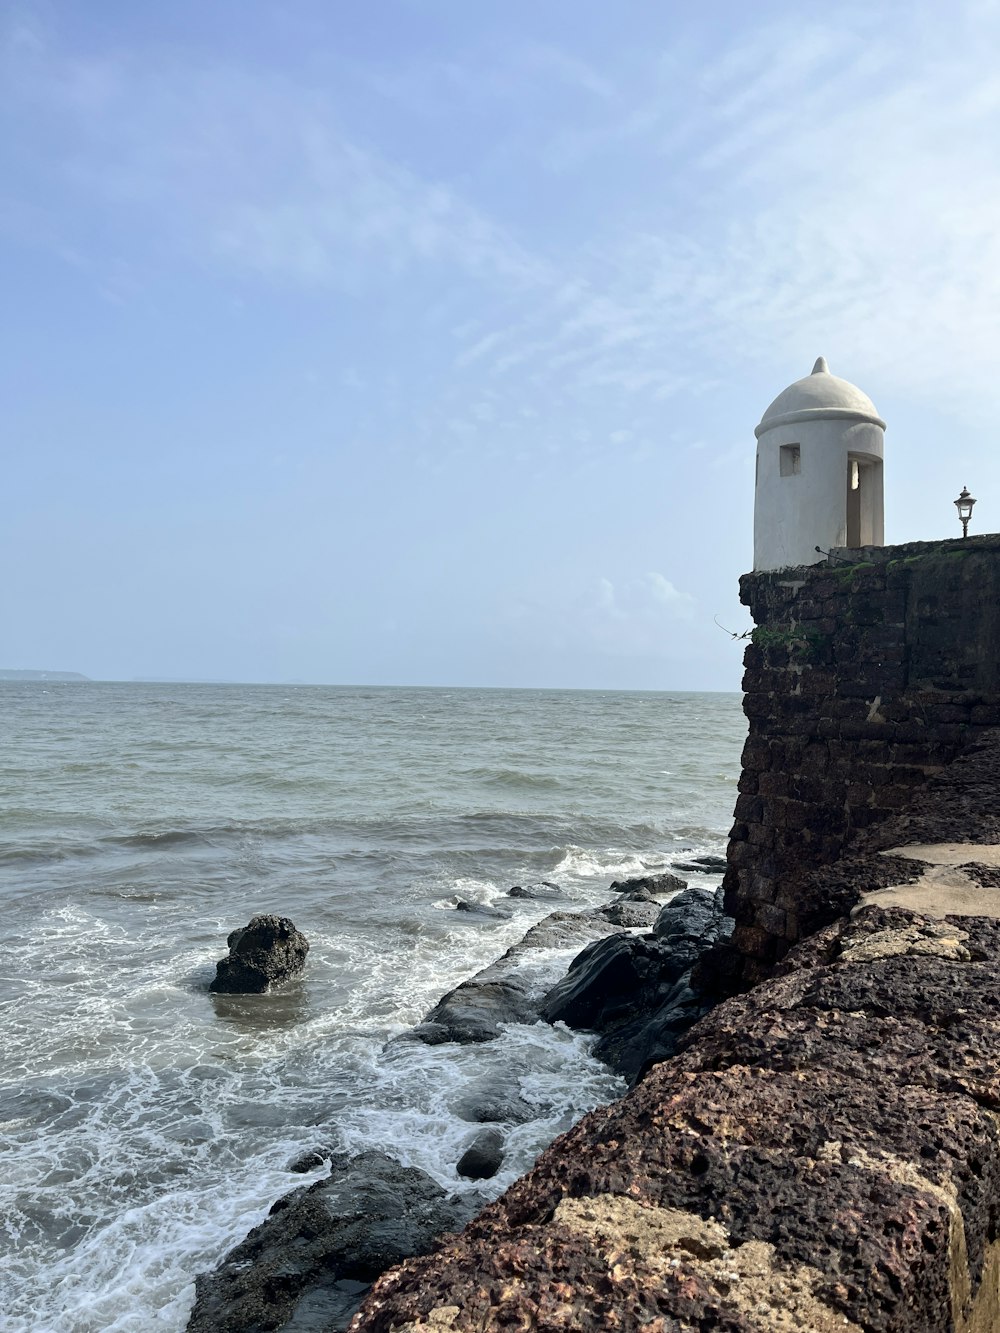 a lighthouse on the edge of a cliff near the ocean